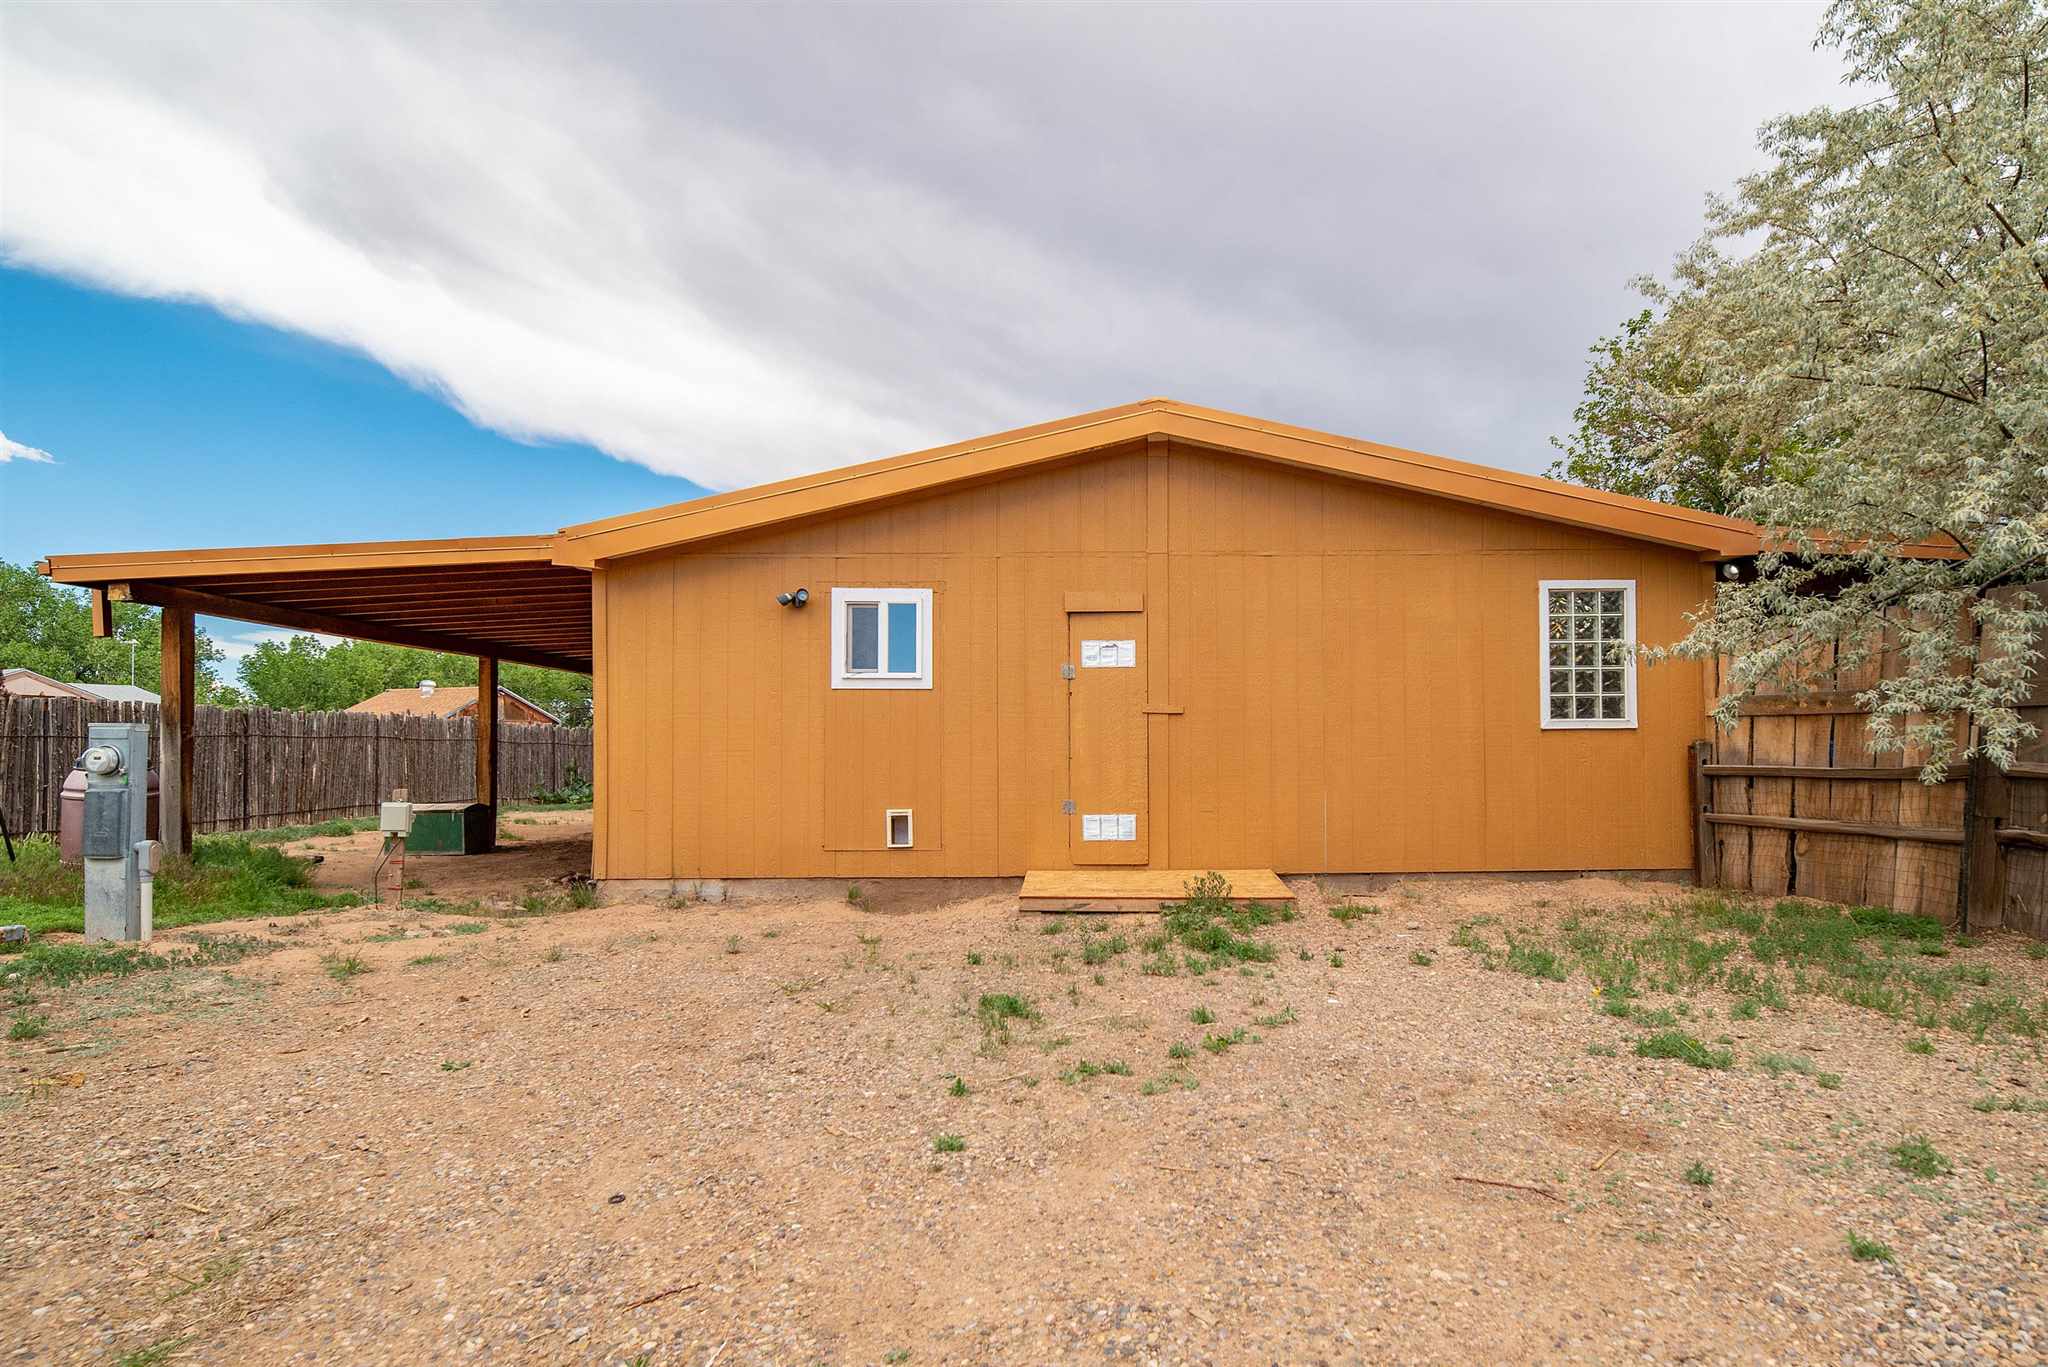 13 El Sol, Santa Fe, New Mexico 87507, 4 Bedrooms Bedrooms, ,2 BathroomsBathrooms,Residential,For Sale,13 El Sol,202102441